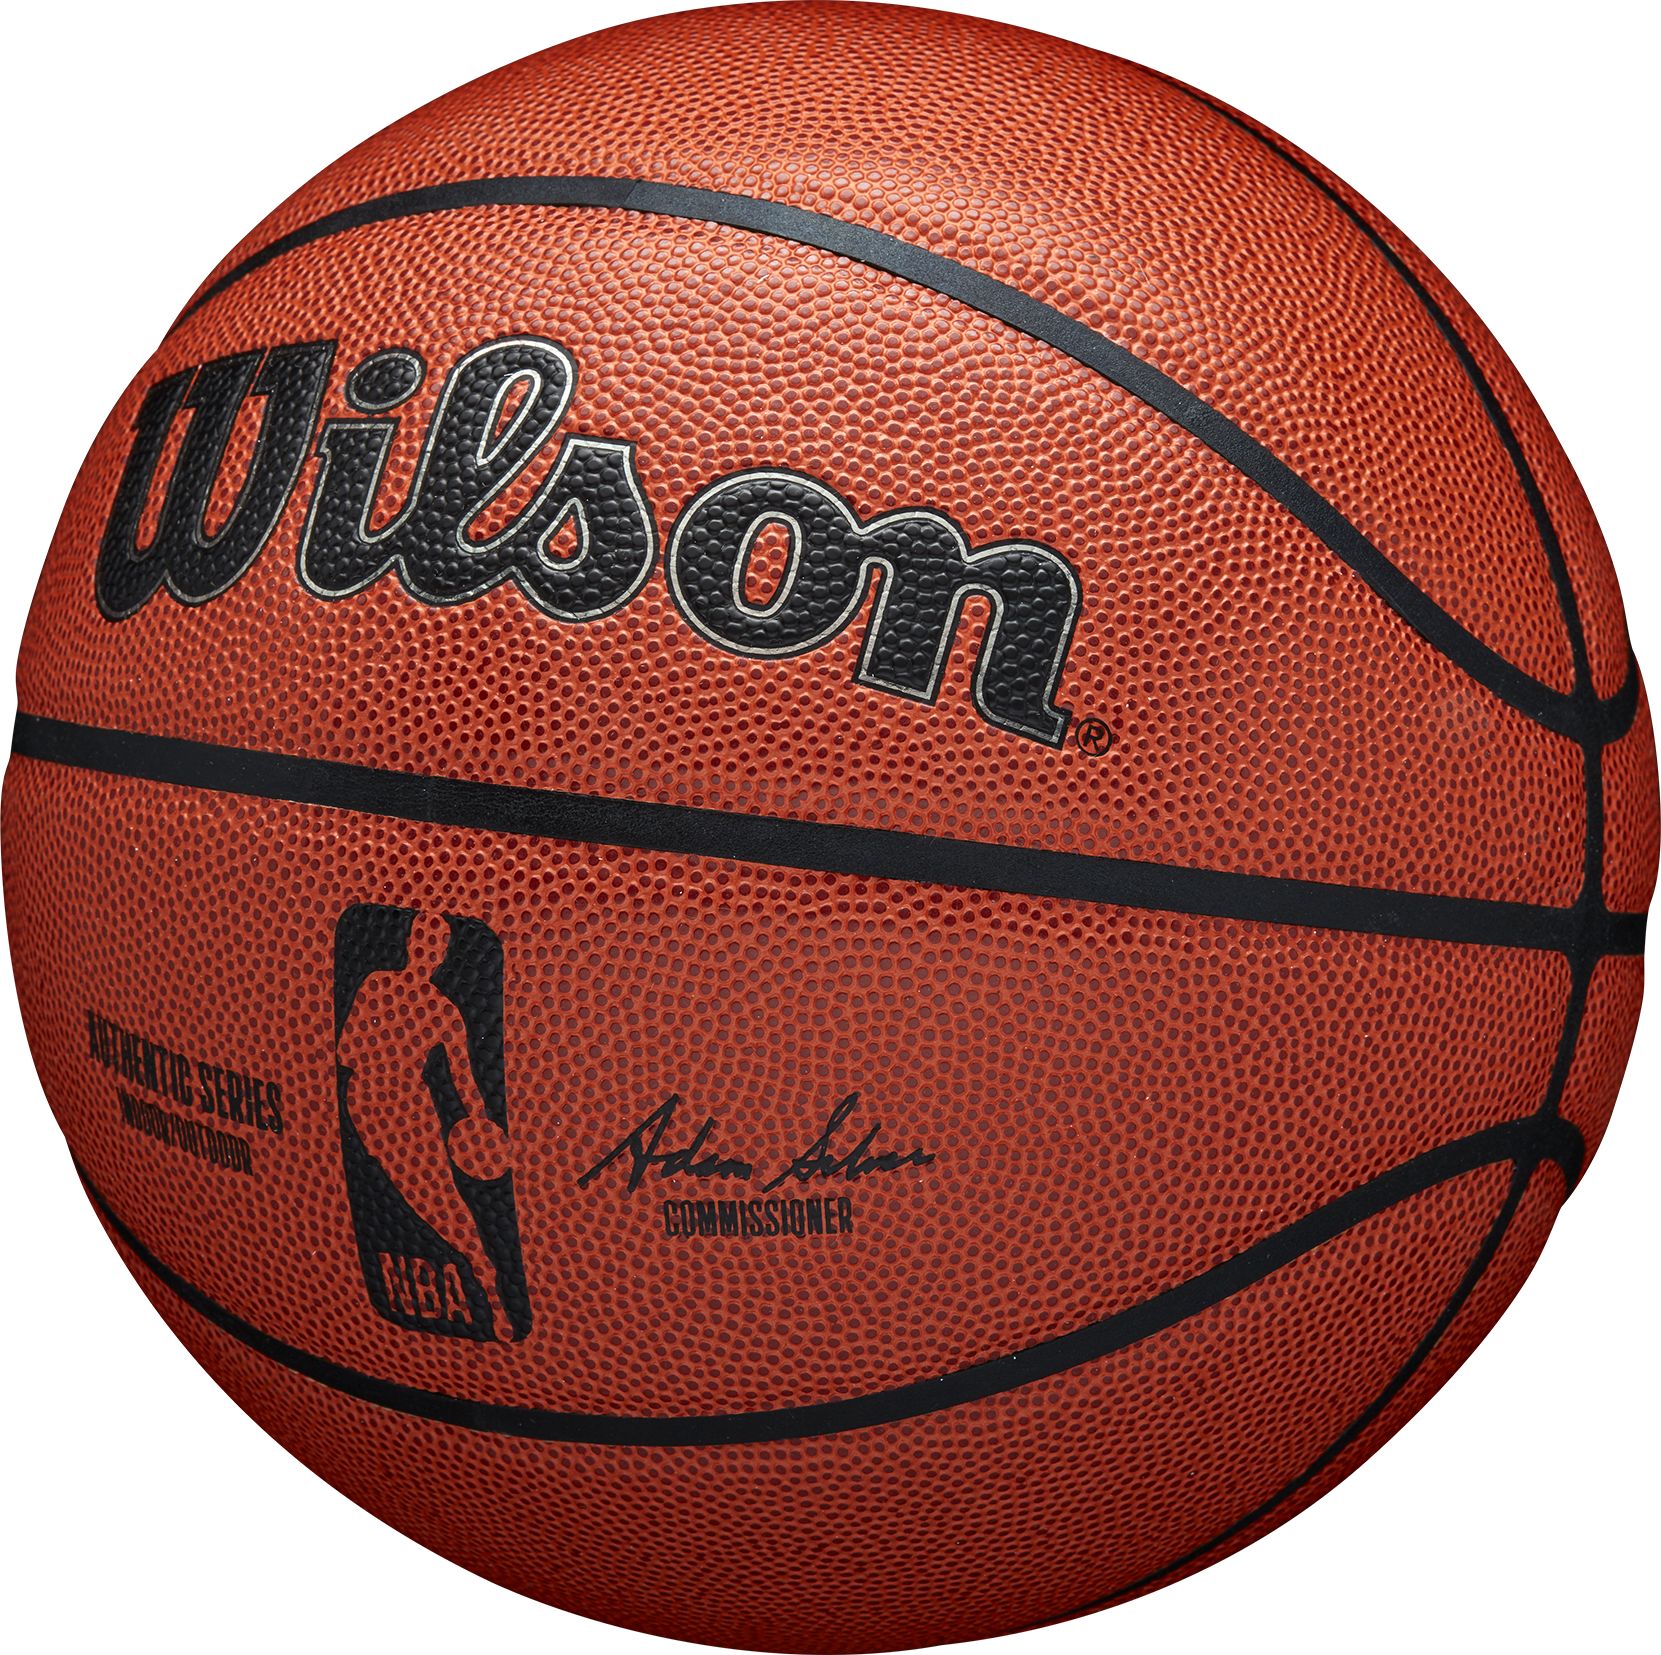 WILSON, NBA AUTHENTIC INDOOR OUTDOOR BSKT SZ7